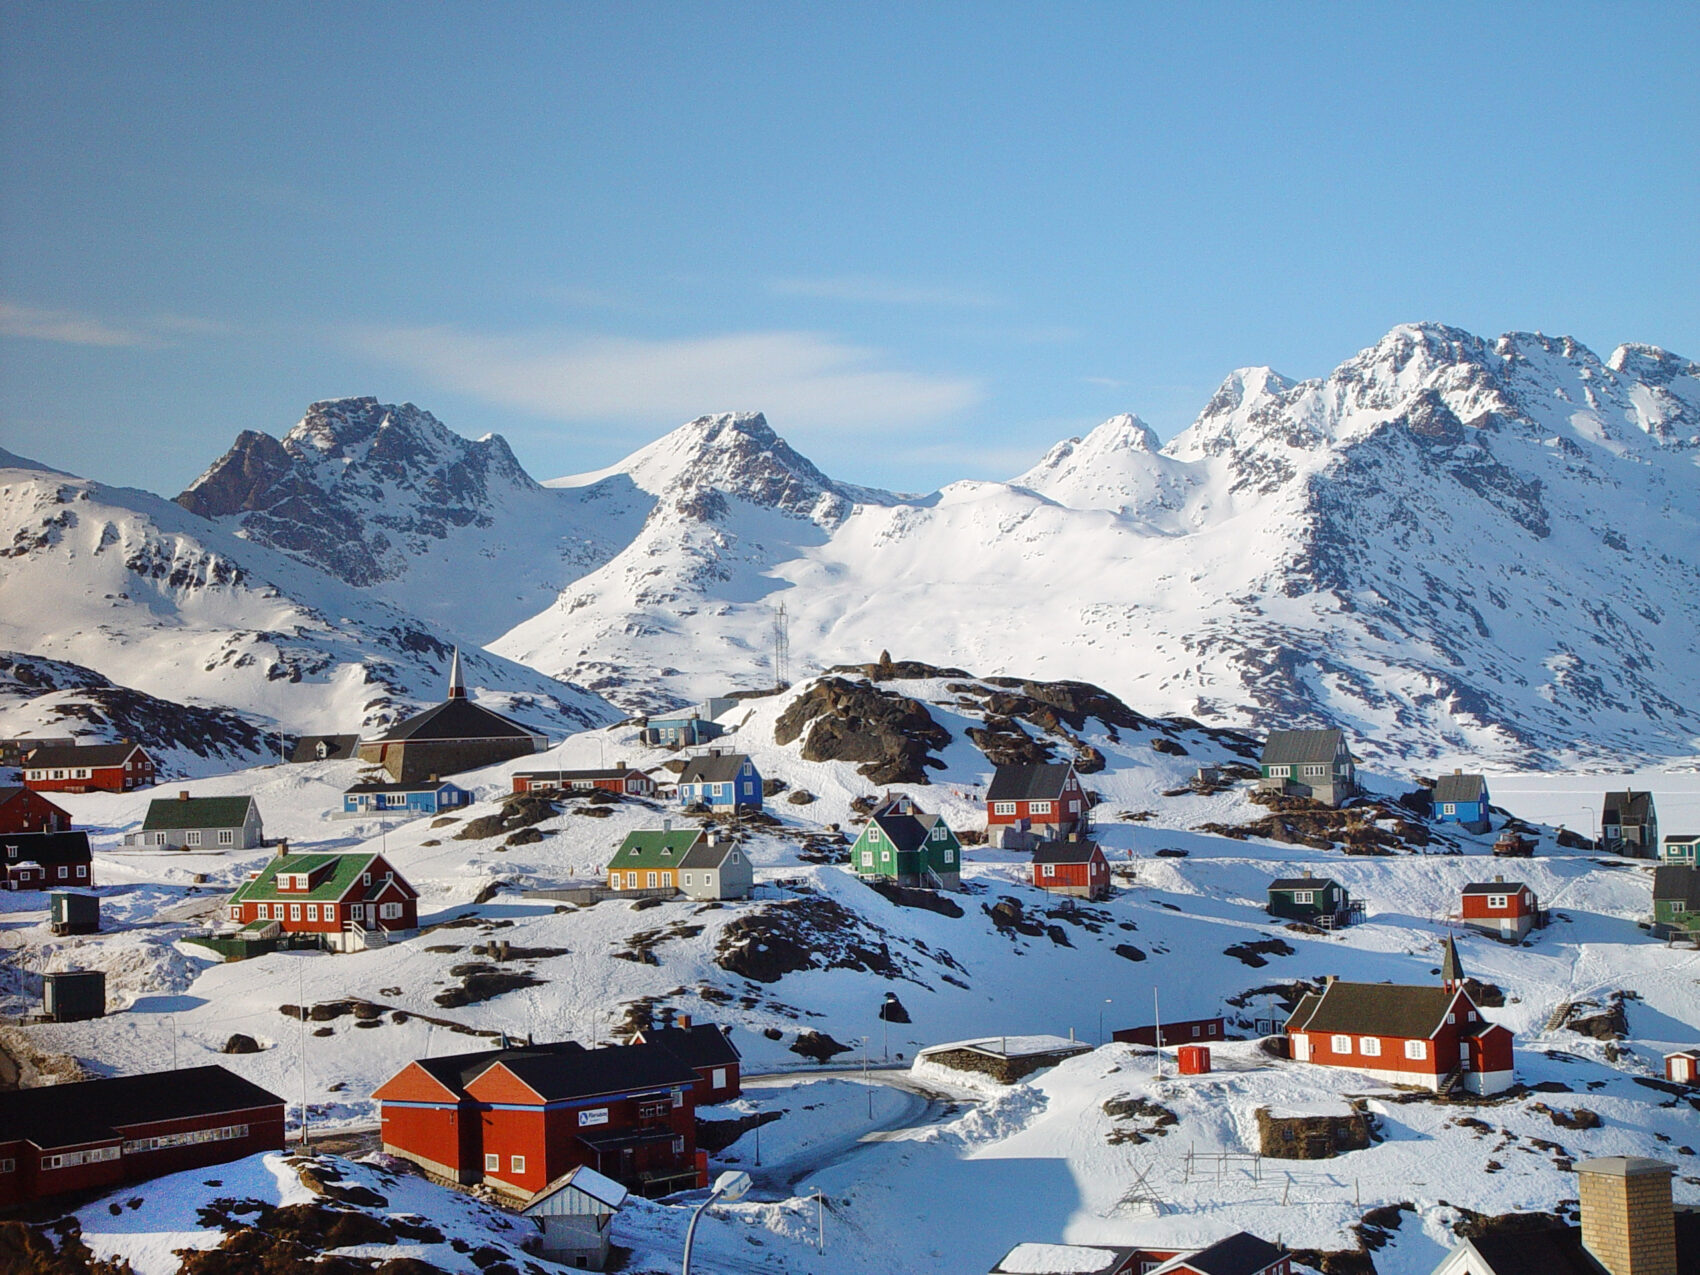 Ostgrönland Siedlung mit Schnee, Häuser liegen verteilt auf felsigen gebiet im Schnee, im Hintergrund Berge ebenfalls beschneit